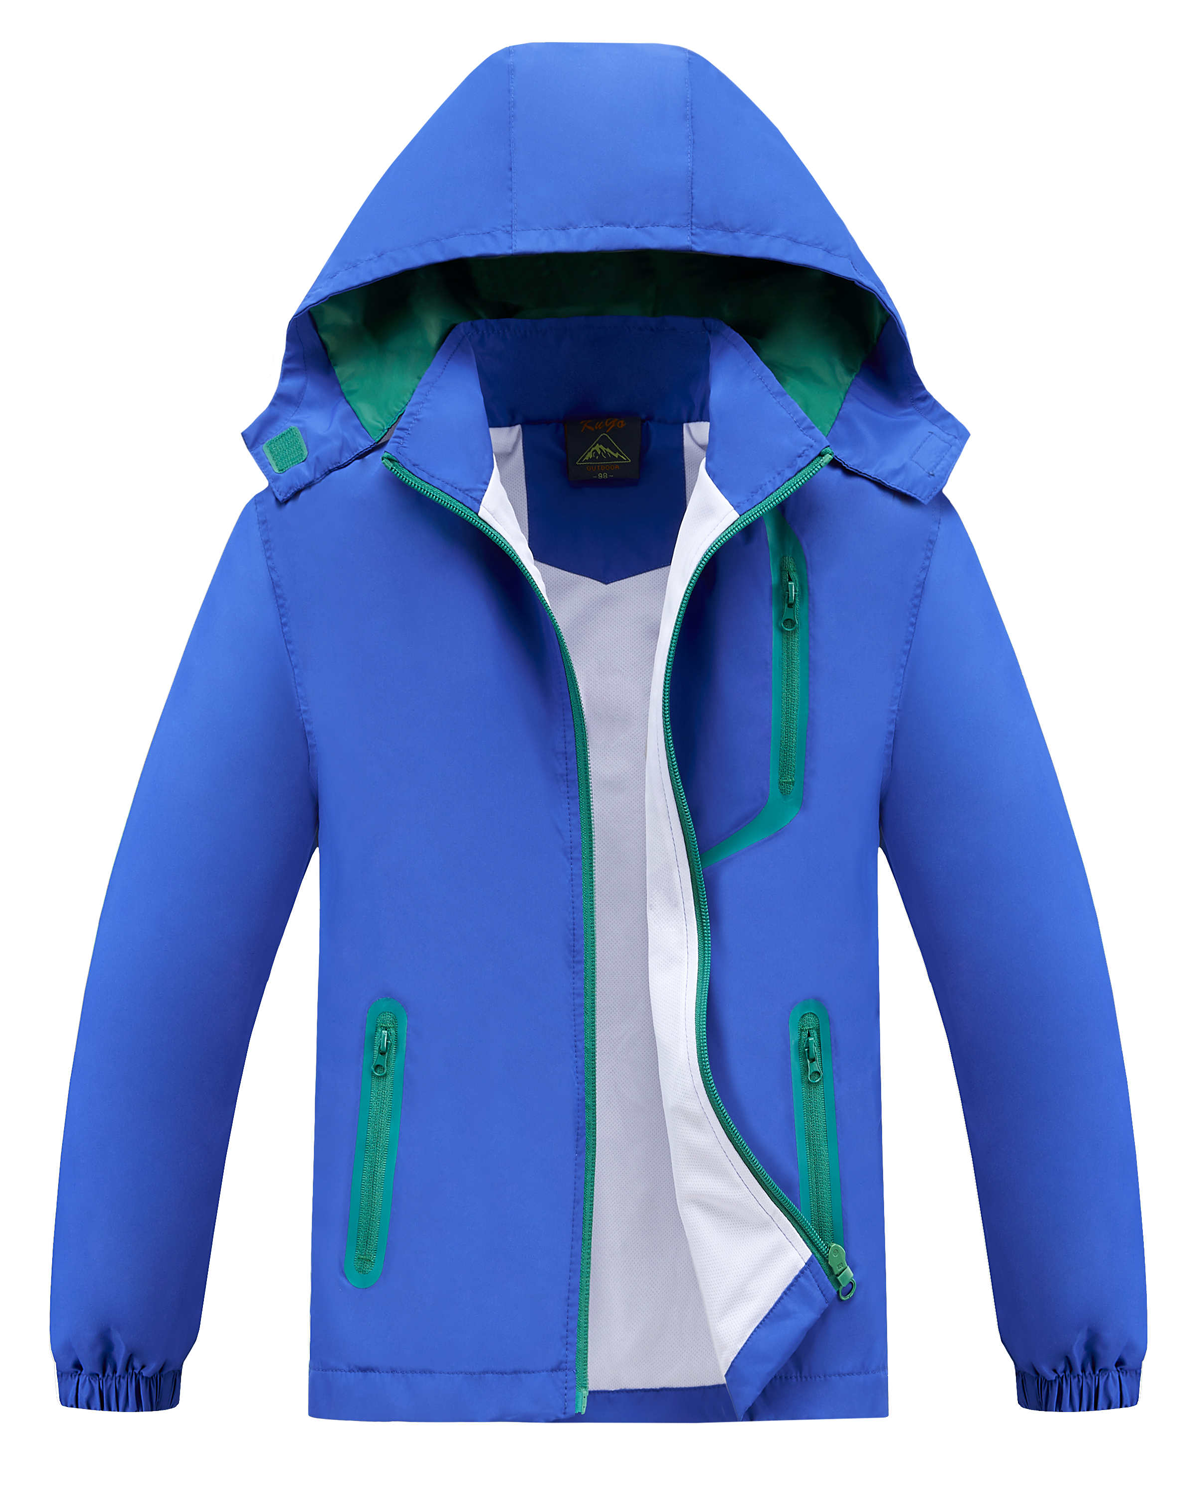 Chlapecká jarní, podzimní bunda - KUGO B2867, modrá Barva: Modrá, Velikost: 152